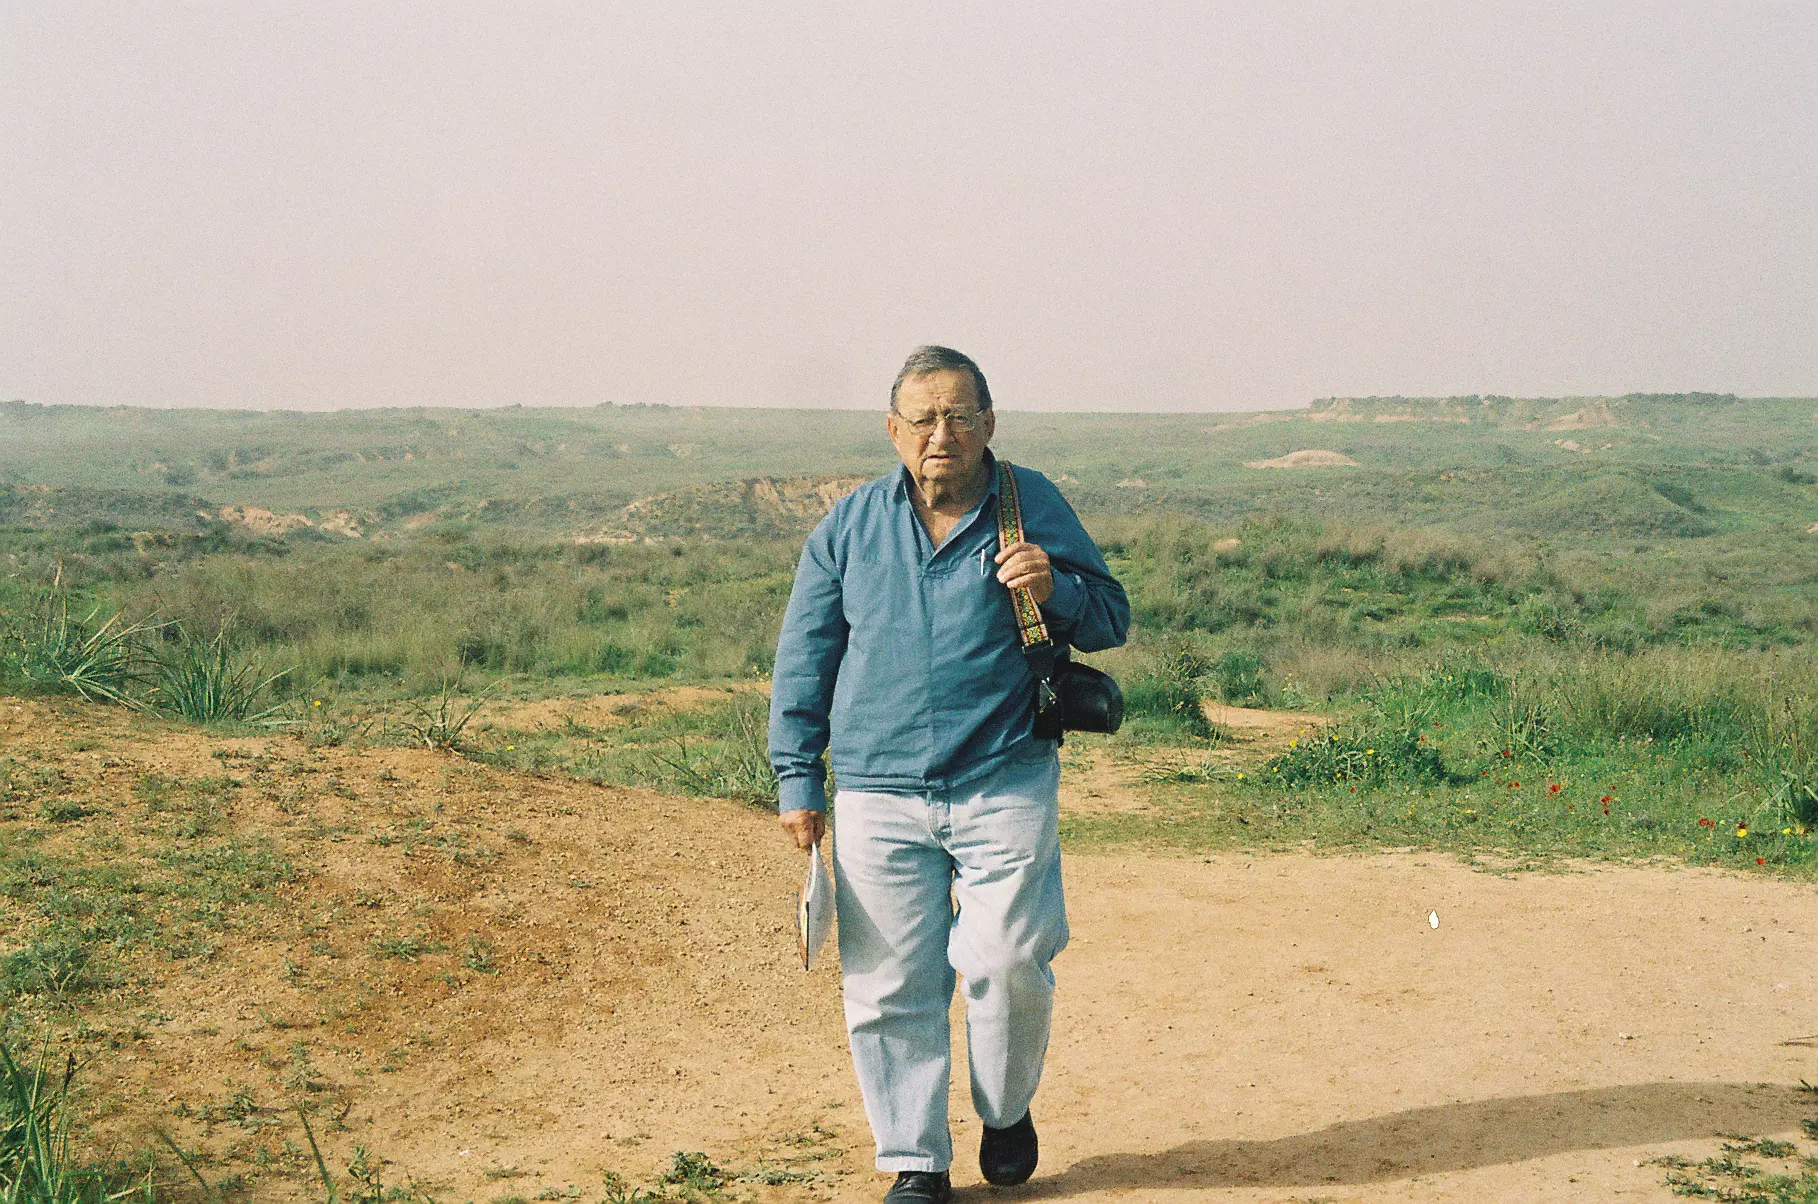 עזריה אלון בטיול בנגב, 2006.